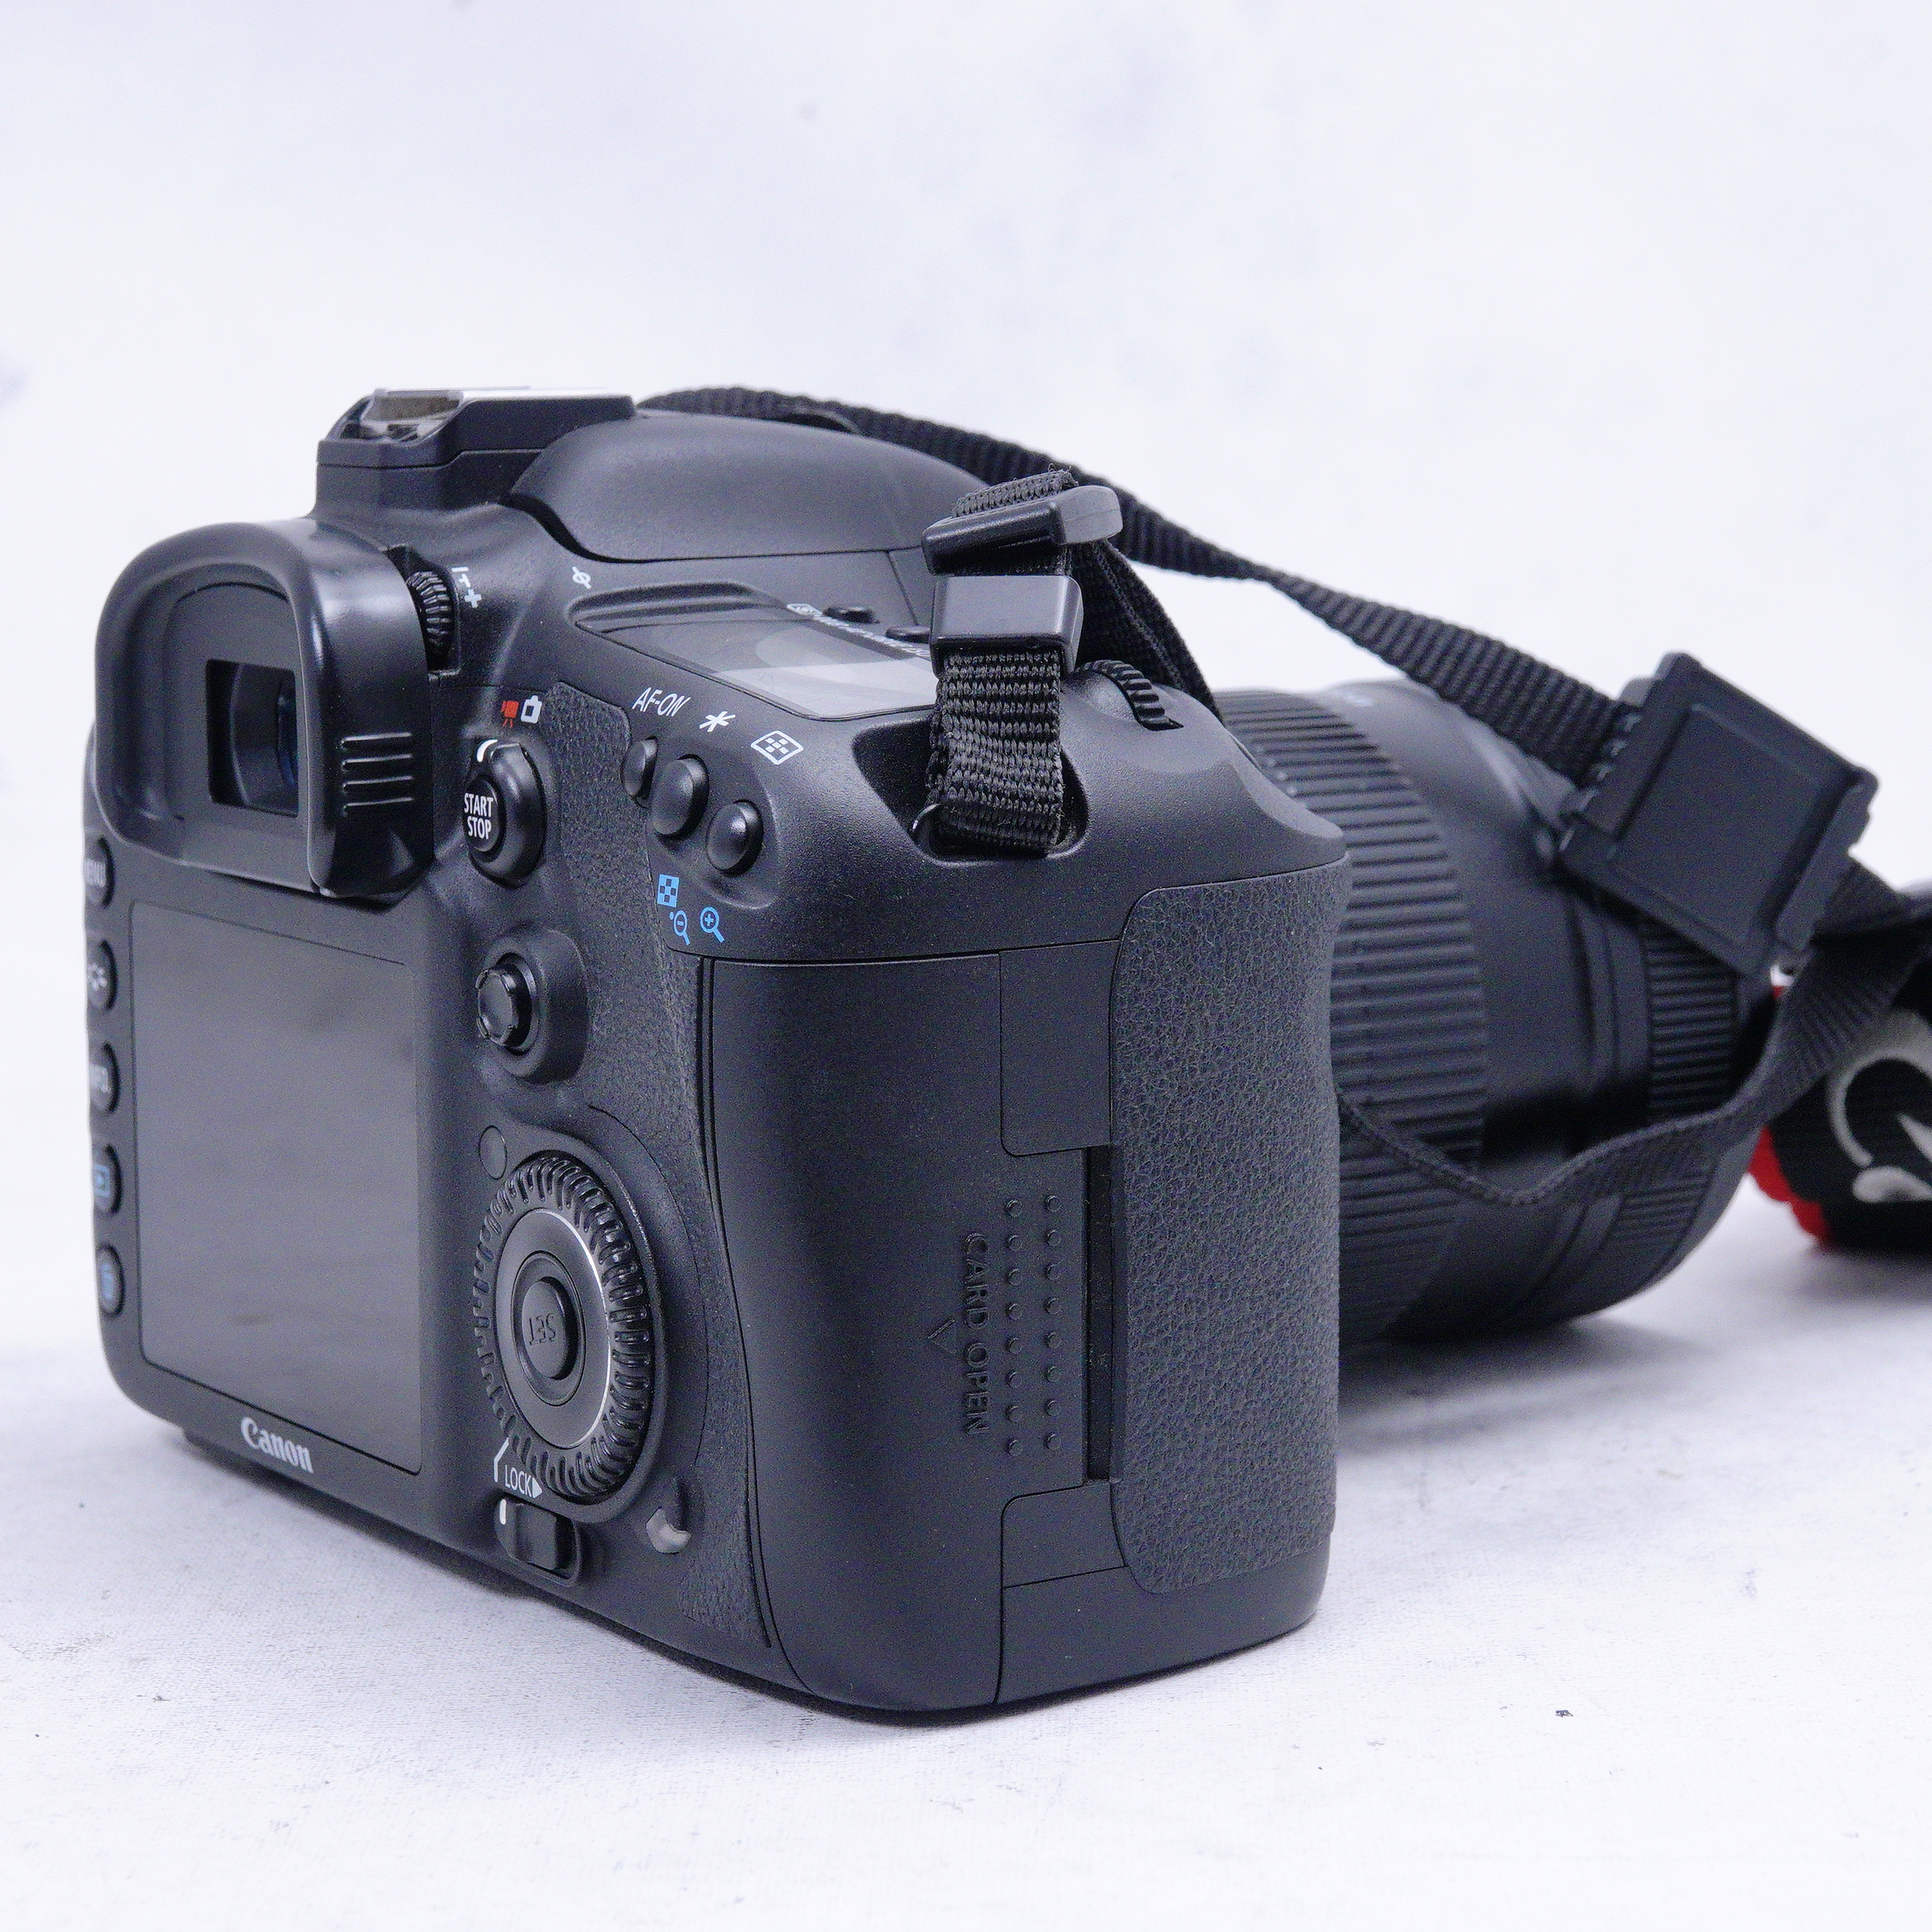 Canon EOS 7D con Lente 18-135mm Kit - Usado